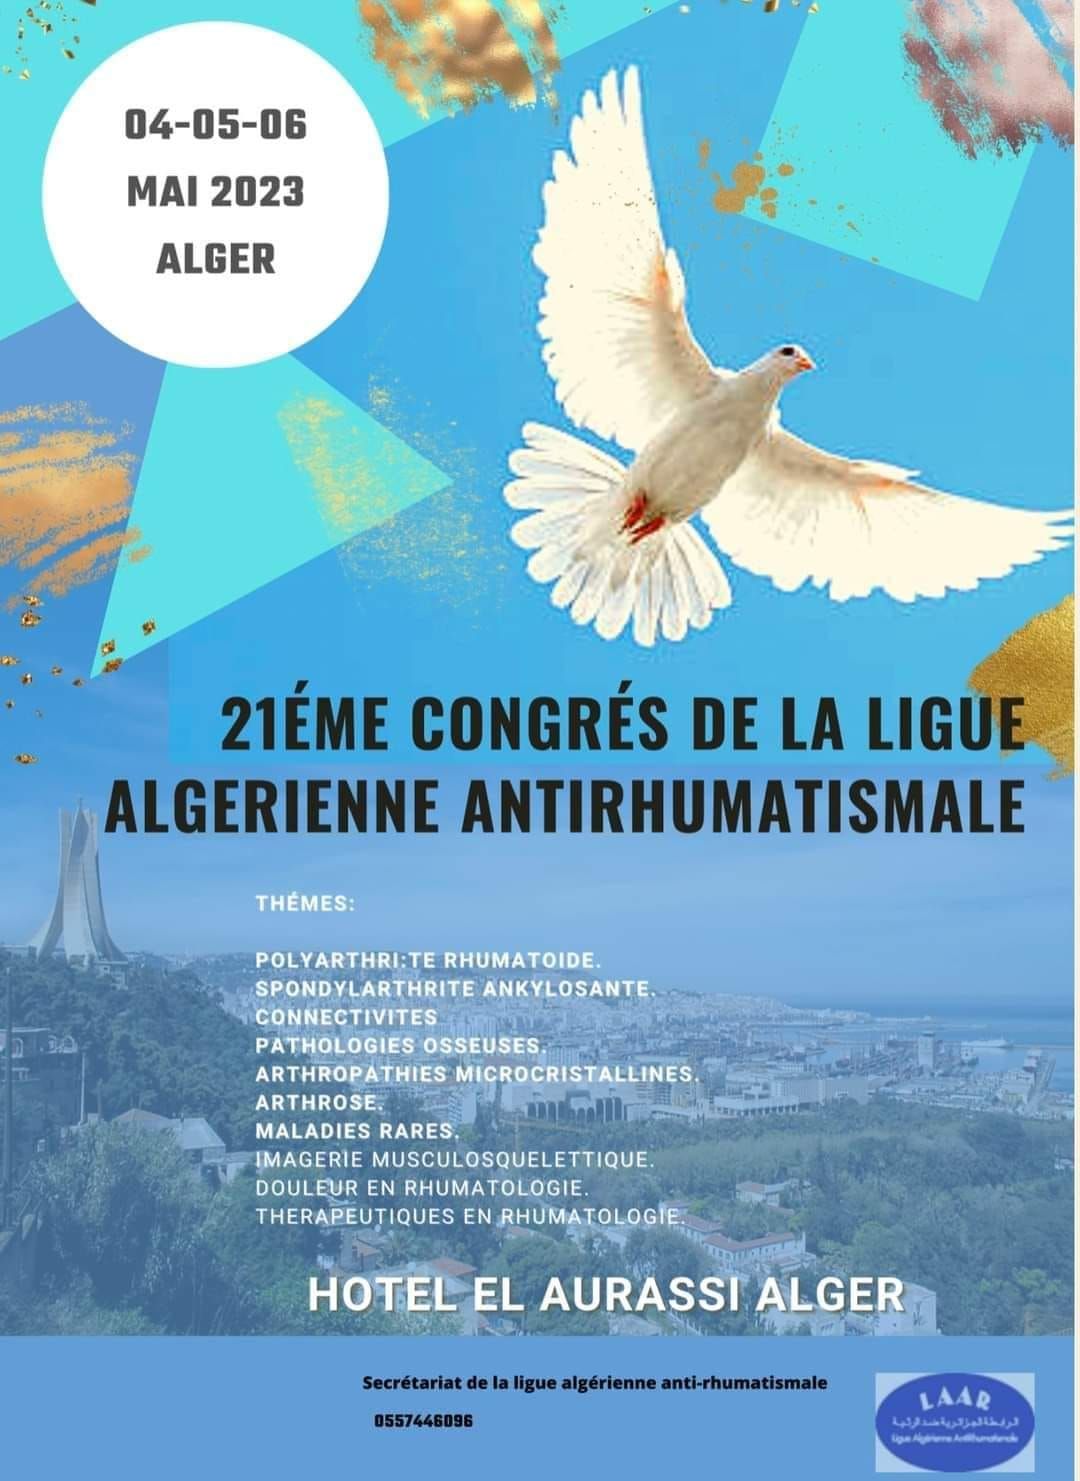 21ème Congrès de la Ligue Algérienne Antirhumatismale le 04/05/06 Mai 2023 affiche